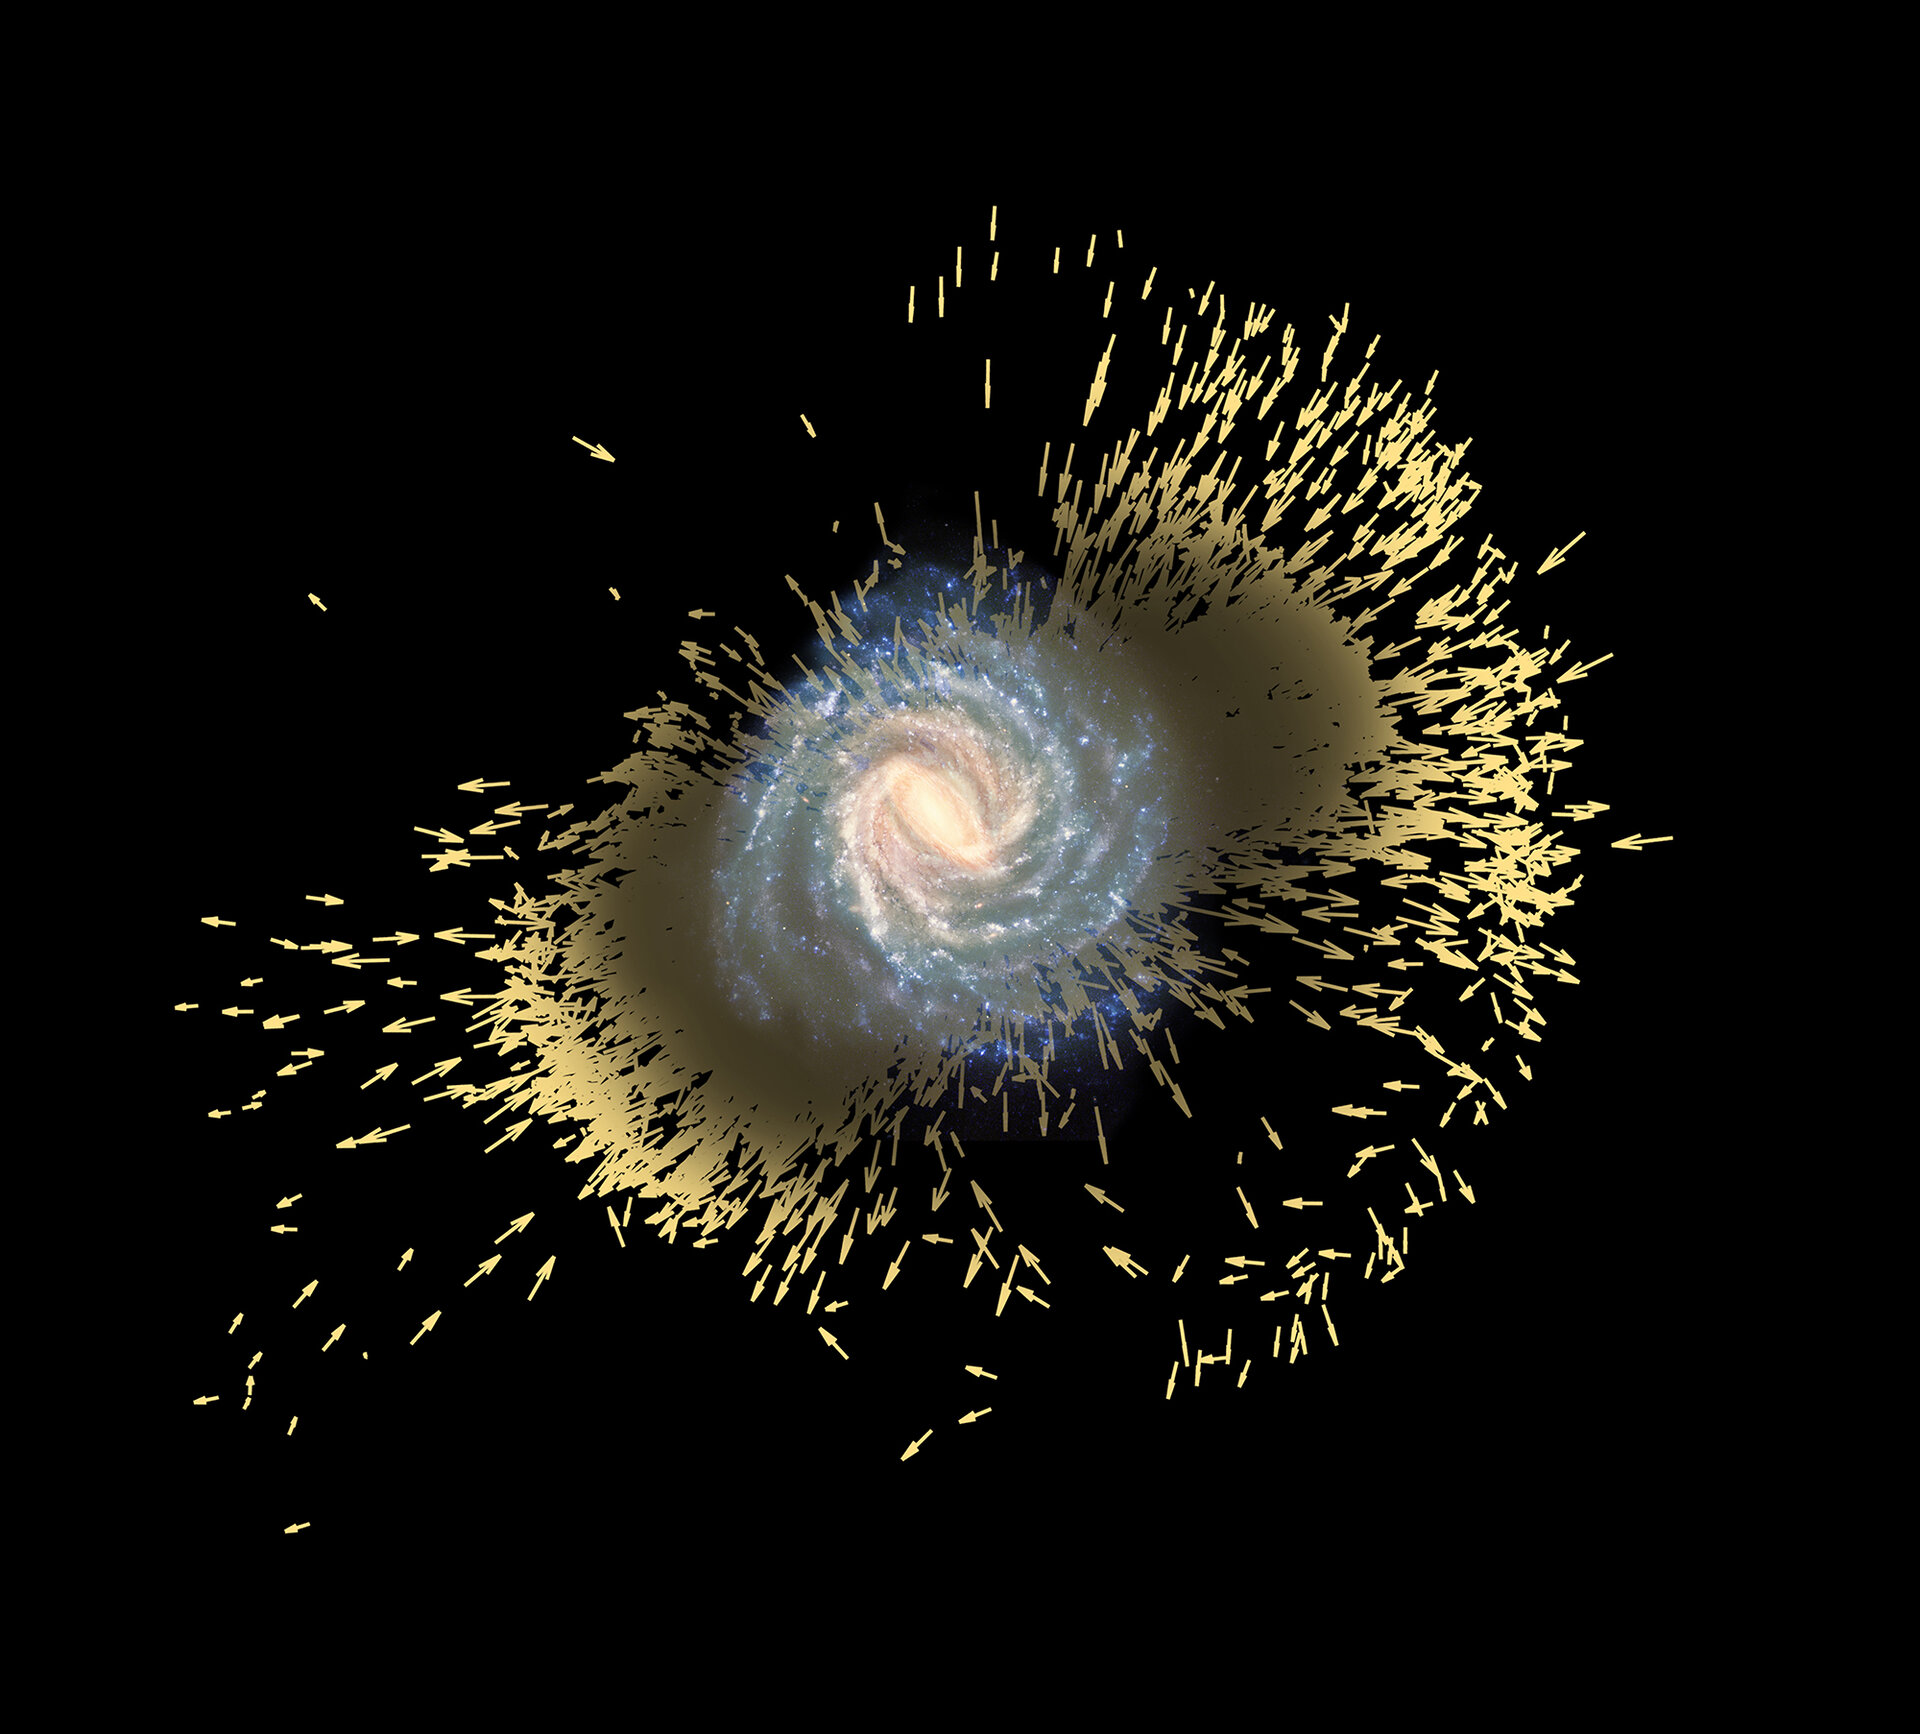 Stellar debris of galactic merger in the Milky Way